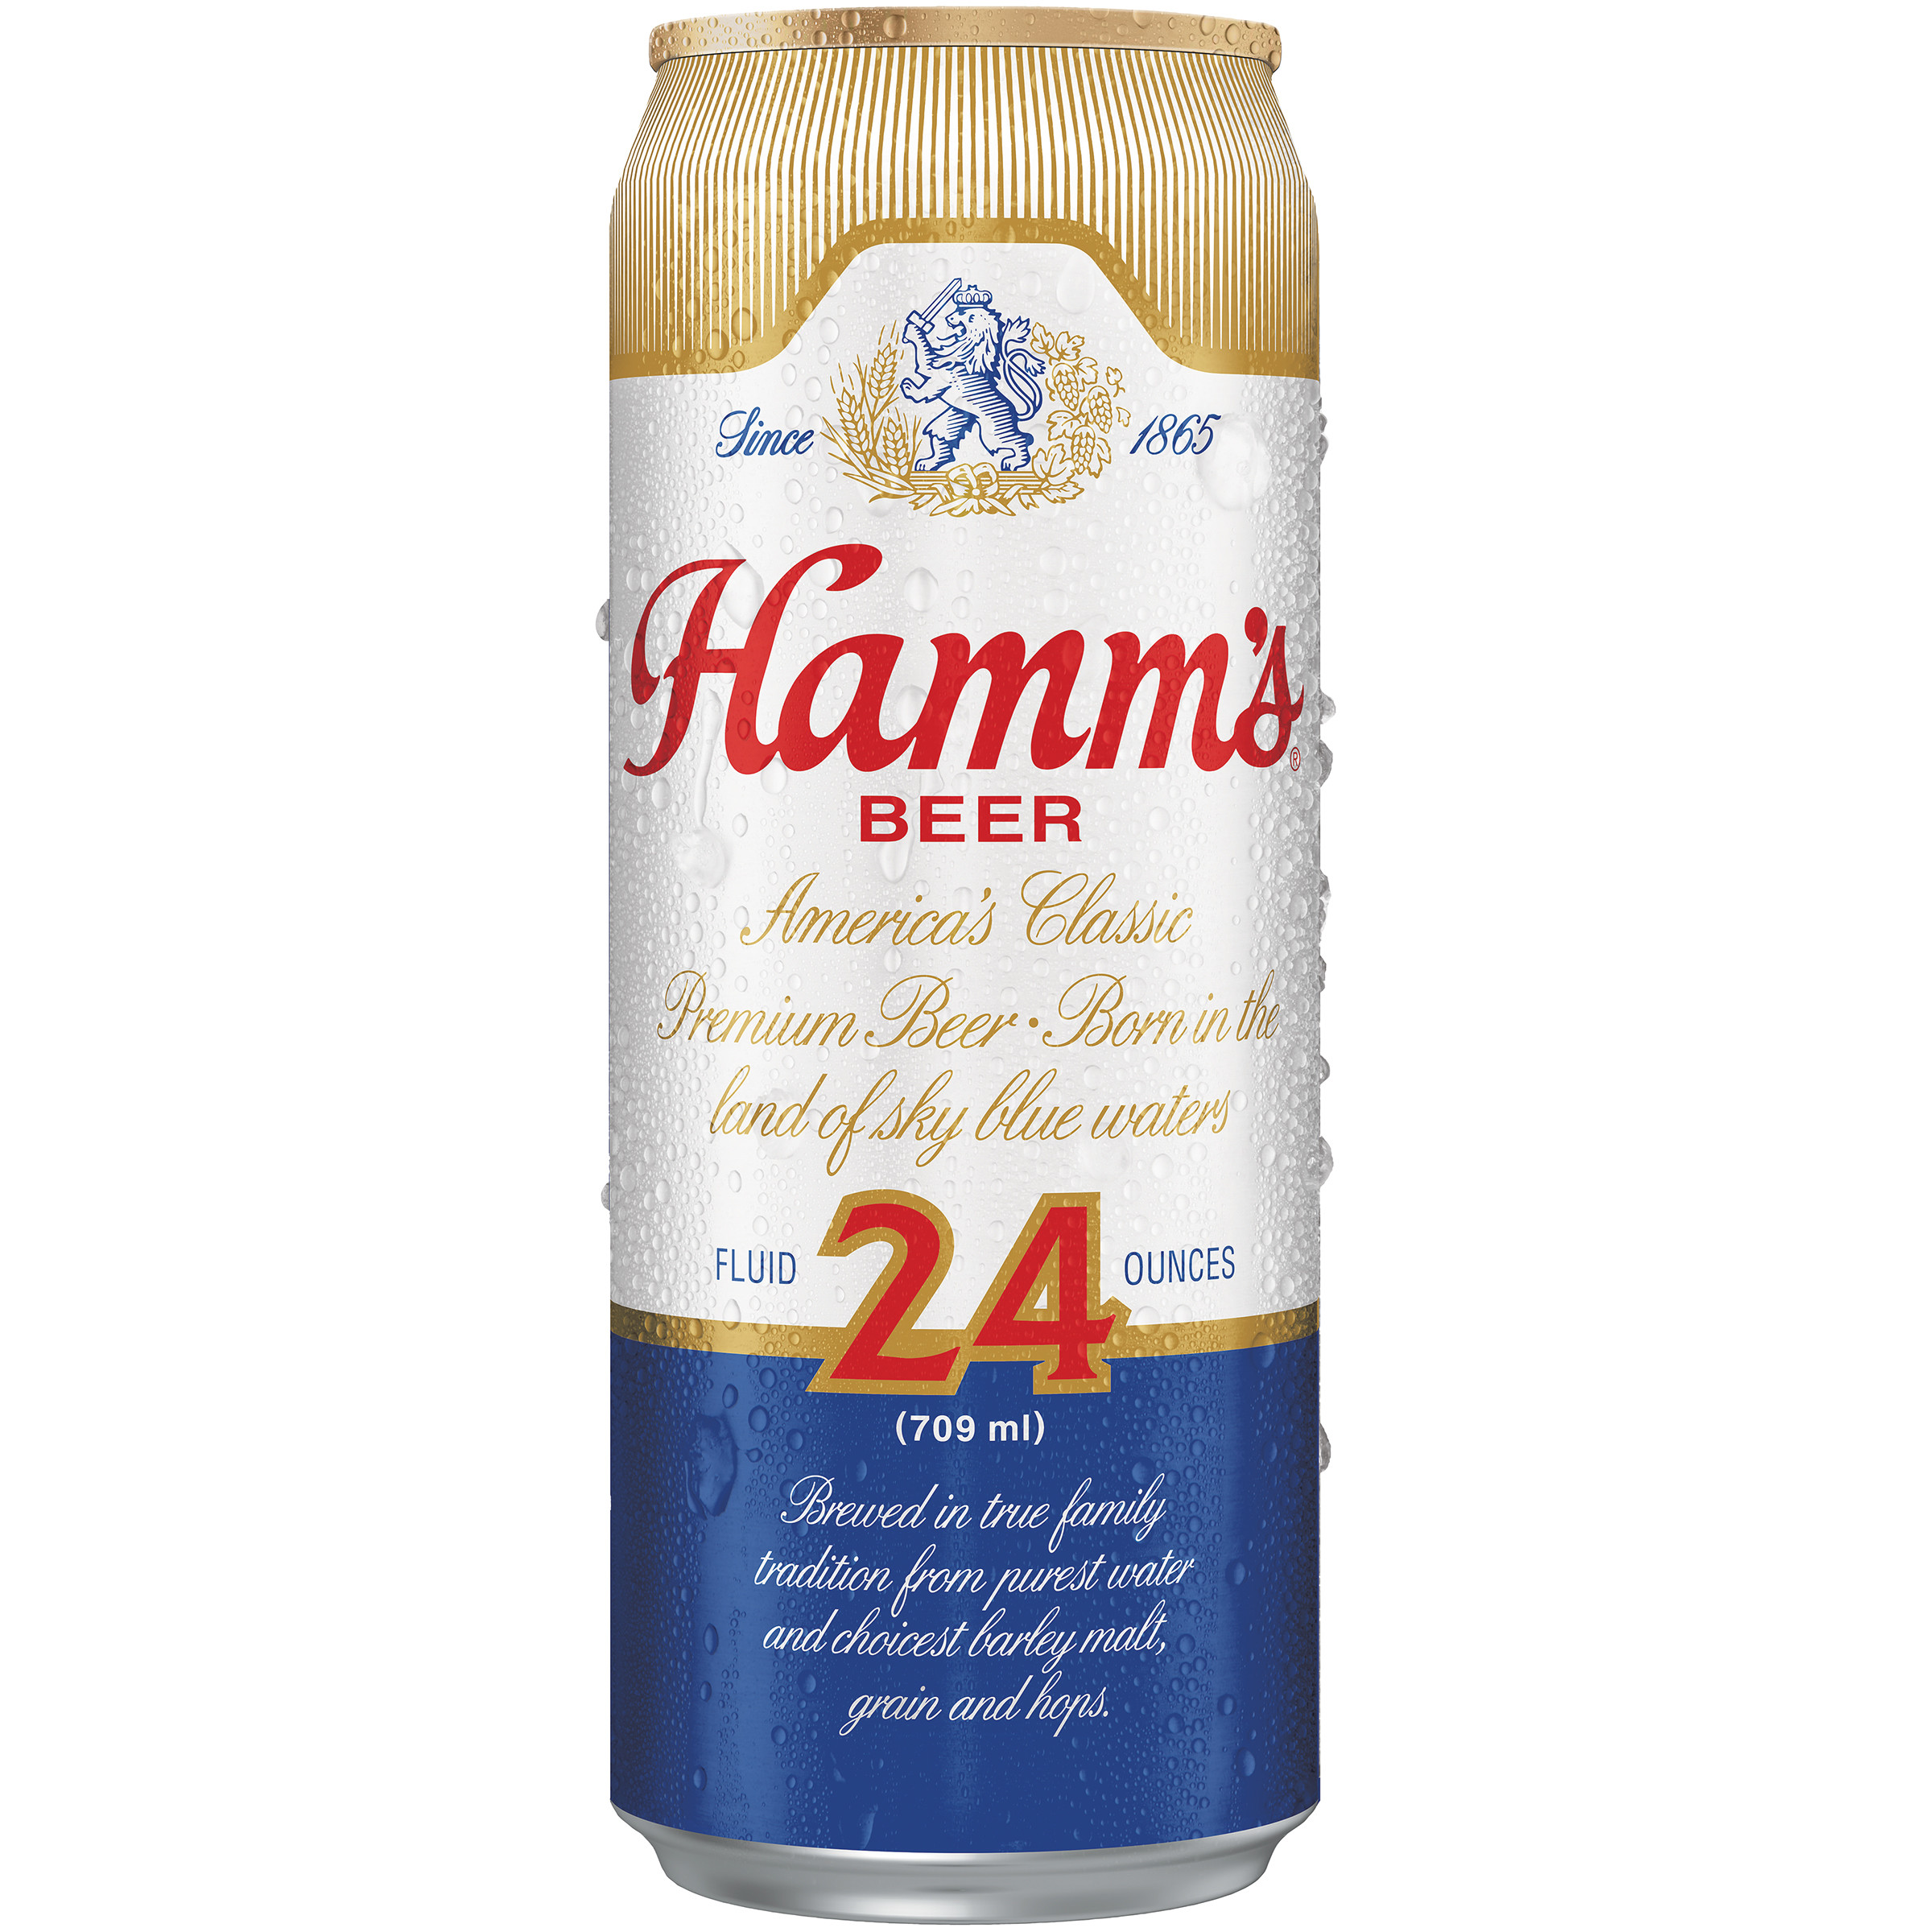 Hamm's beer